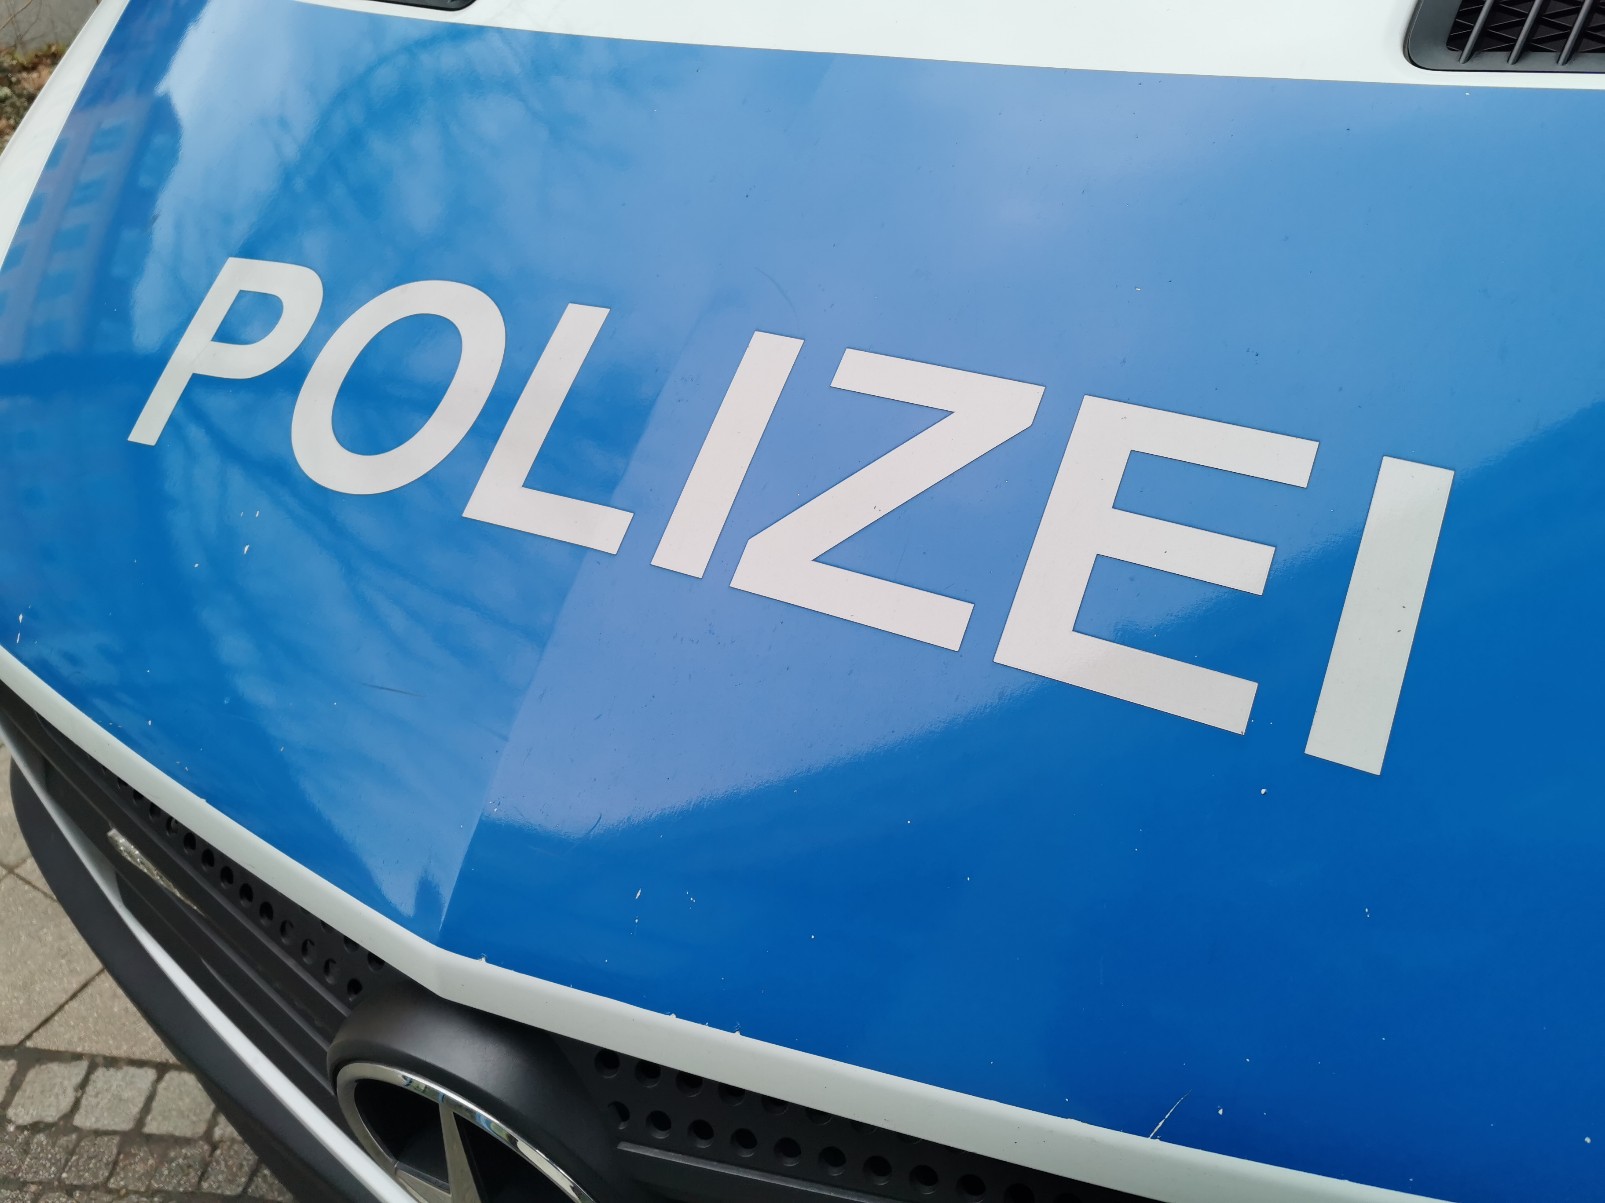 Hoffenheim – Zwei hochwertige E-Bikes aus Gartenhäuschen gestohlen